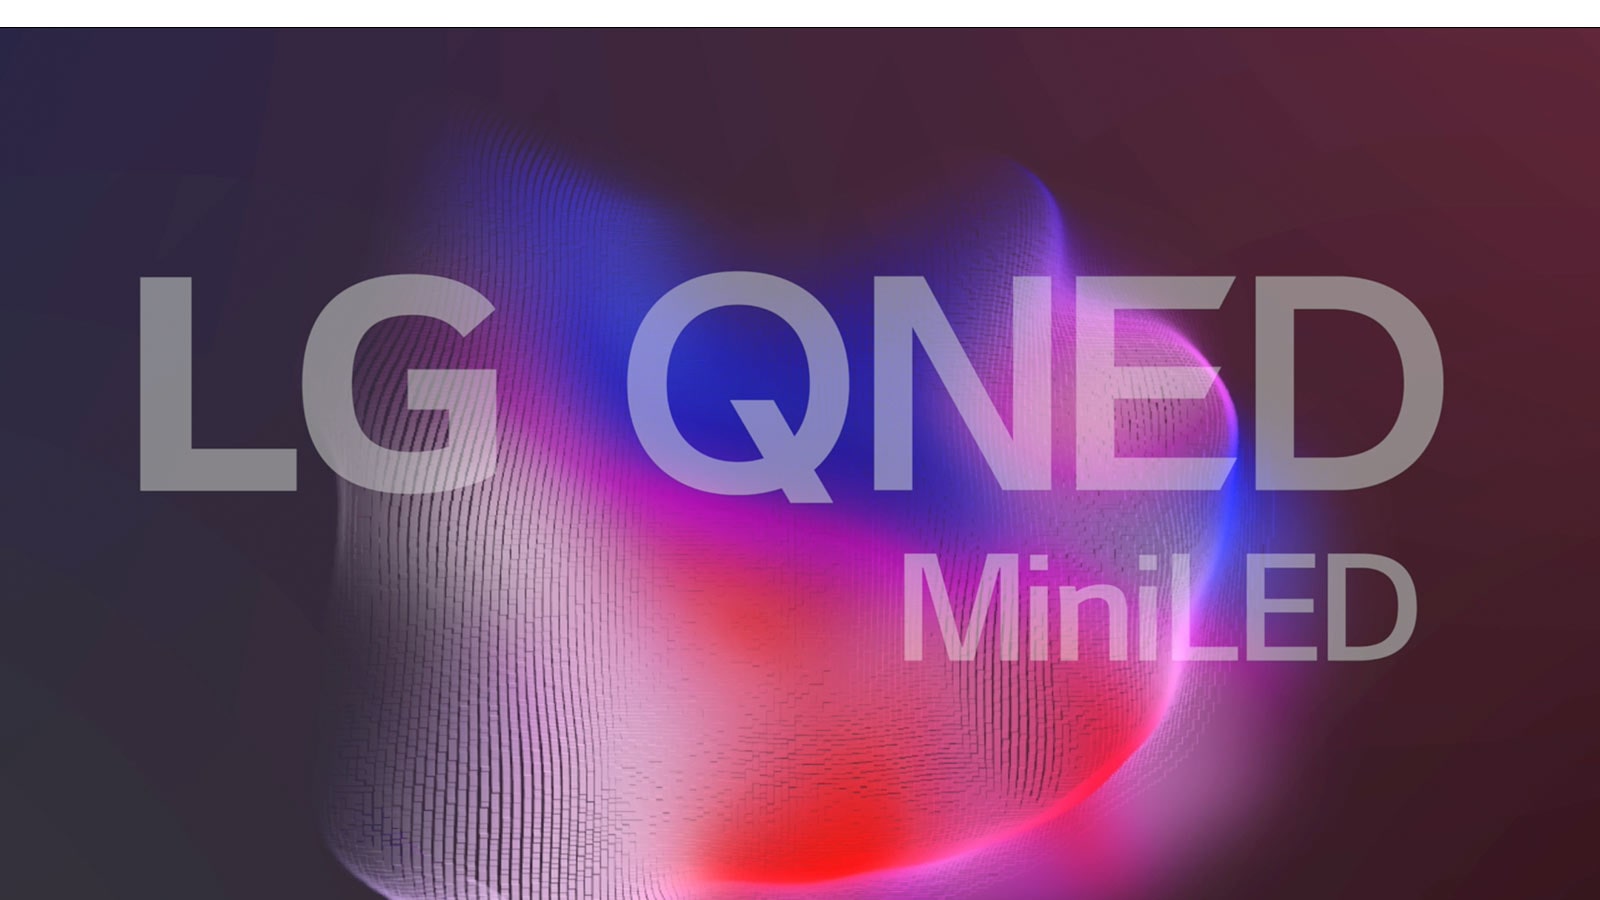 Schermo TV con logo LG QNED Mini LED e piccole particelle radianti che insieme formano un pesce guerriero.